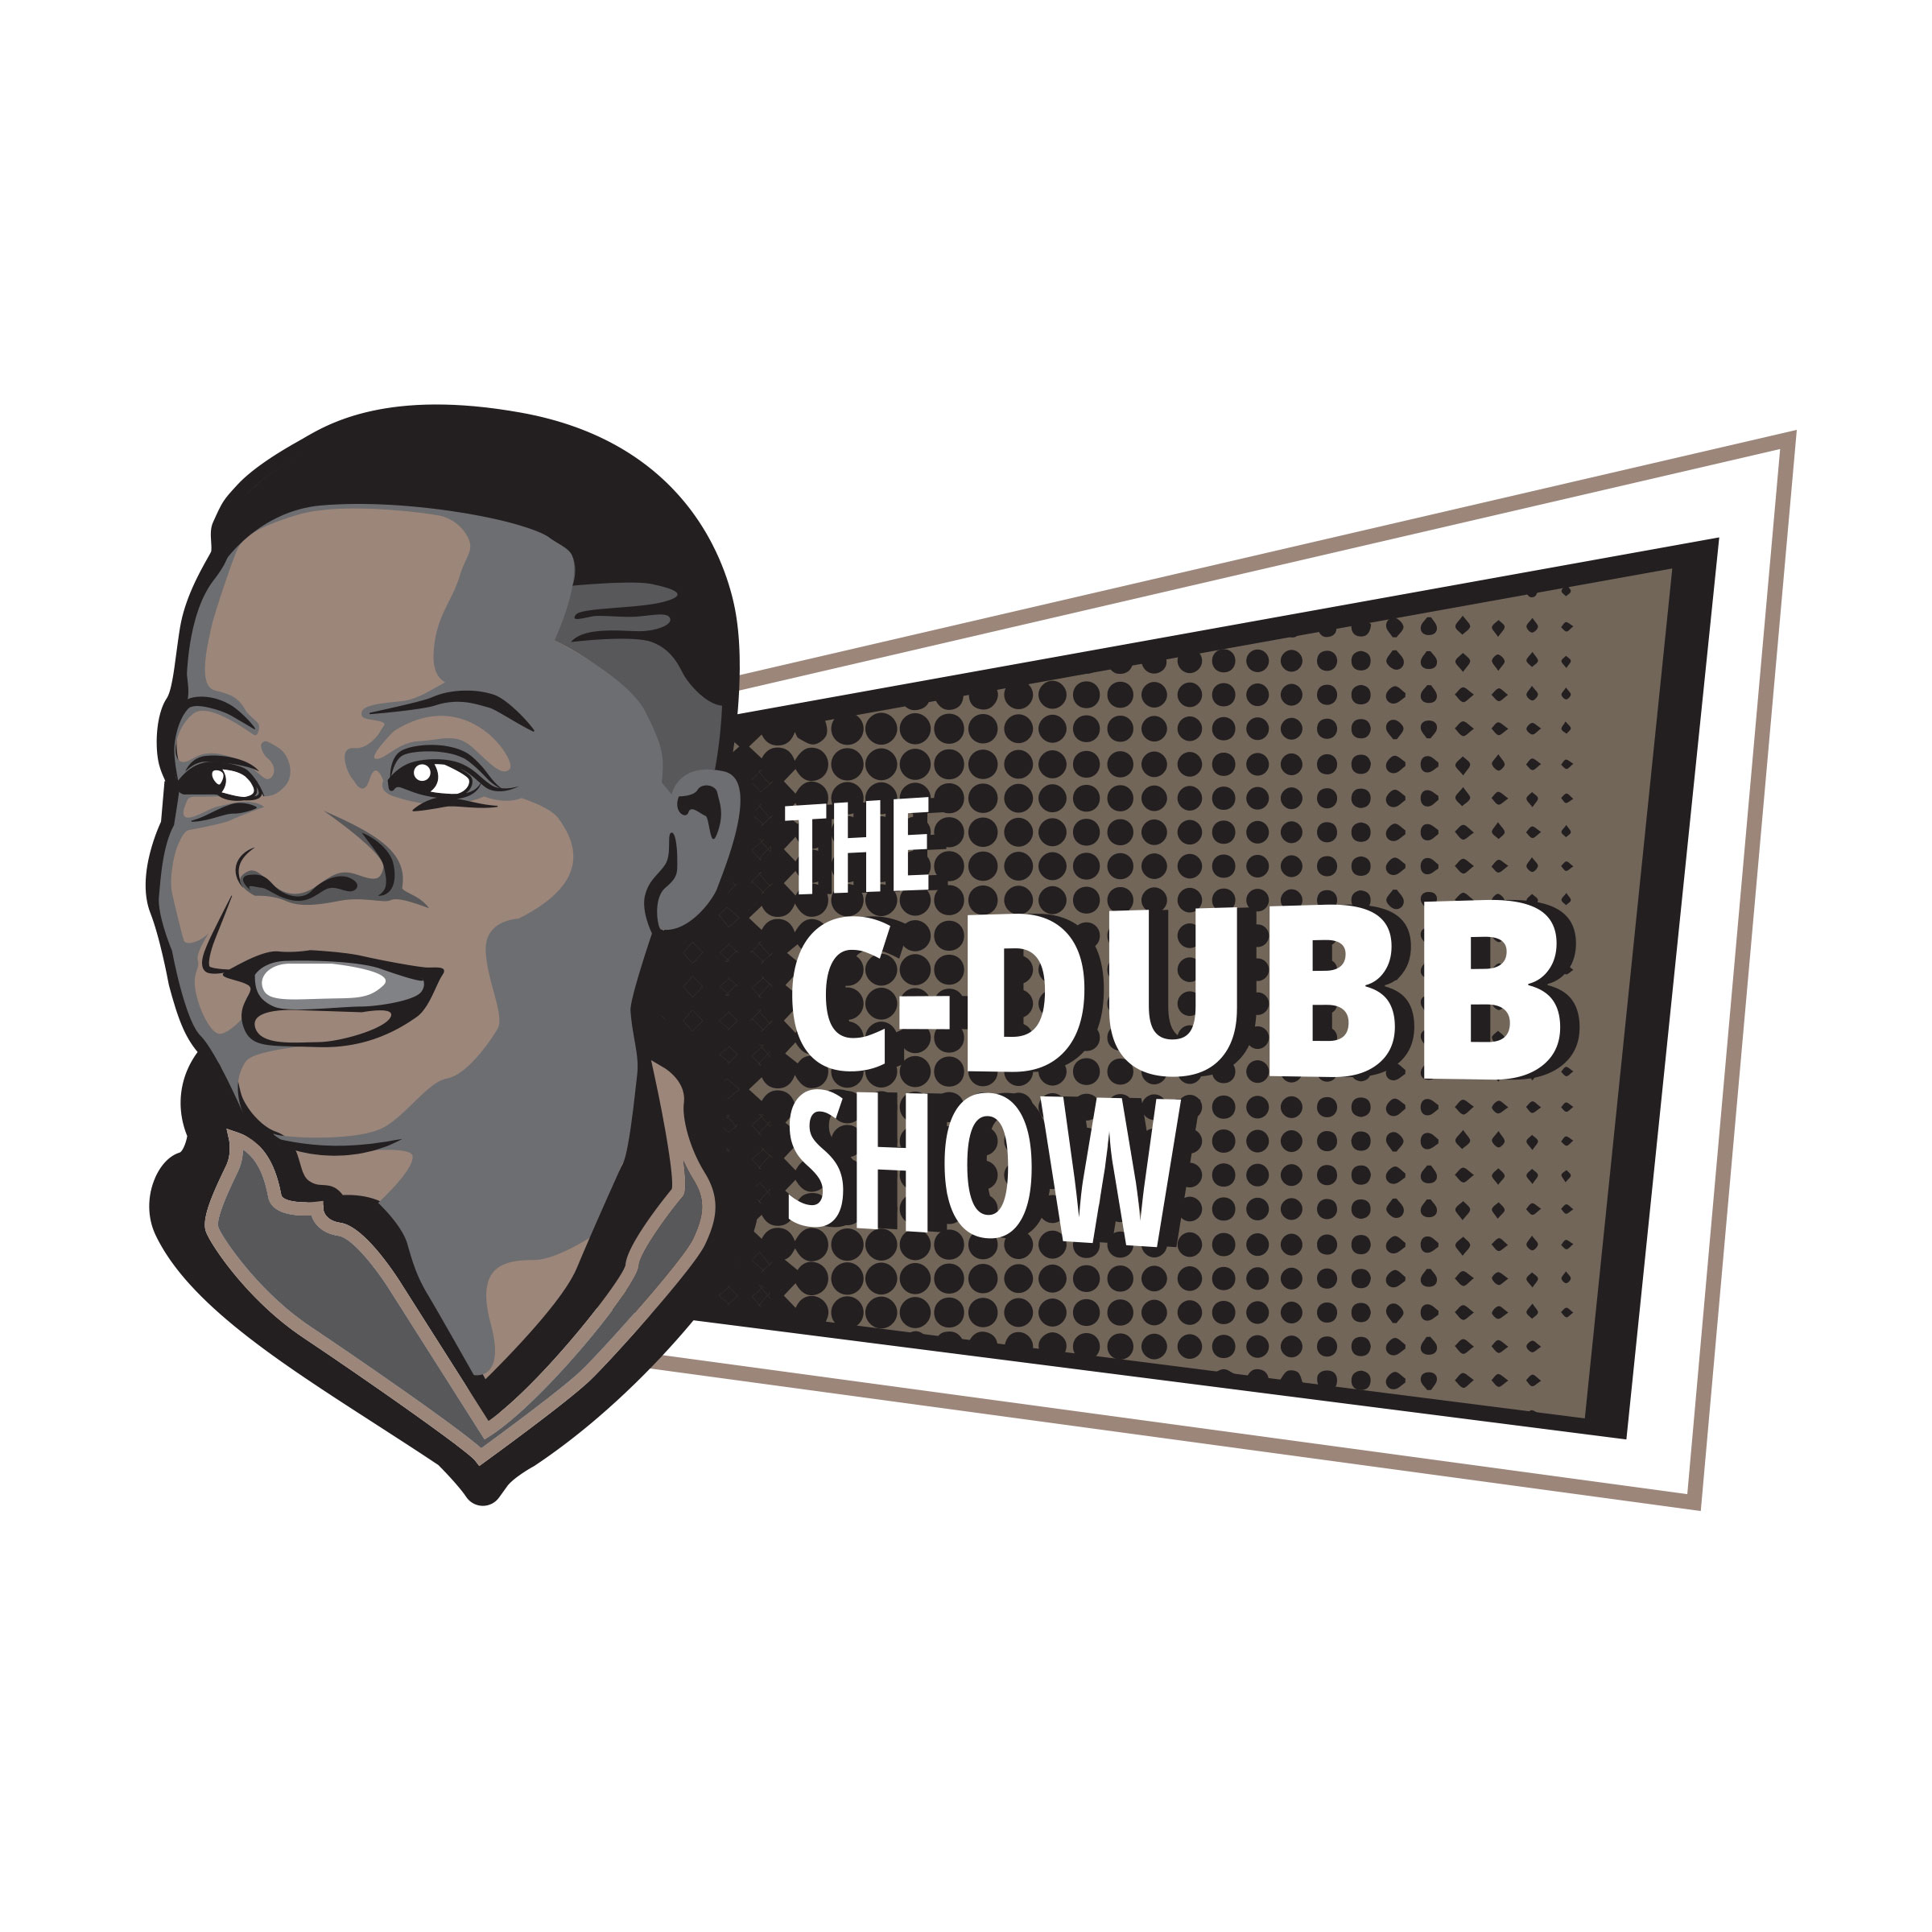 The C-Dubb Show